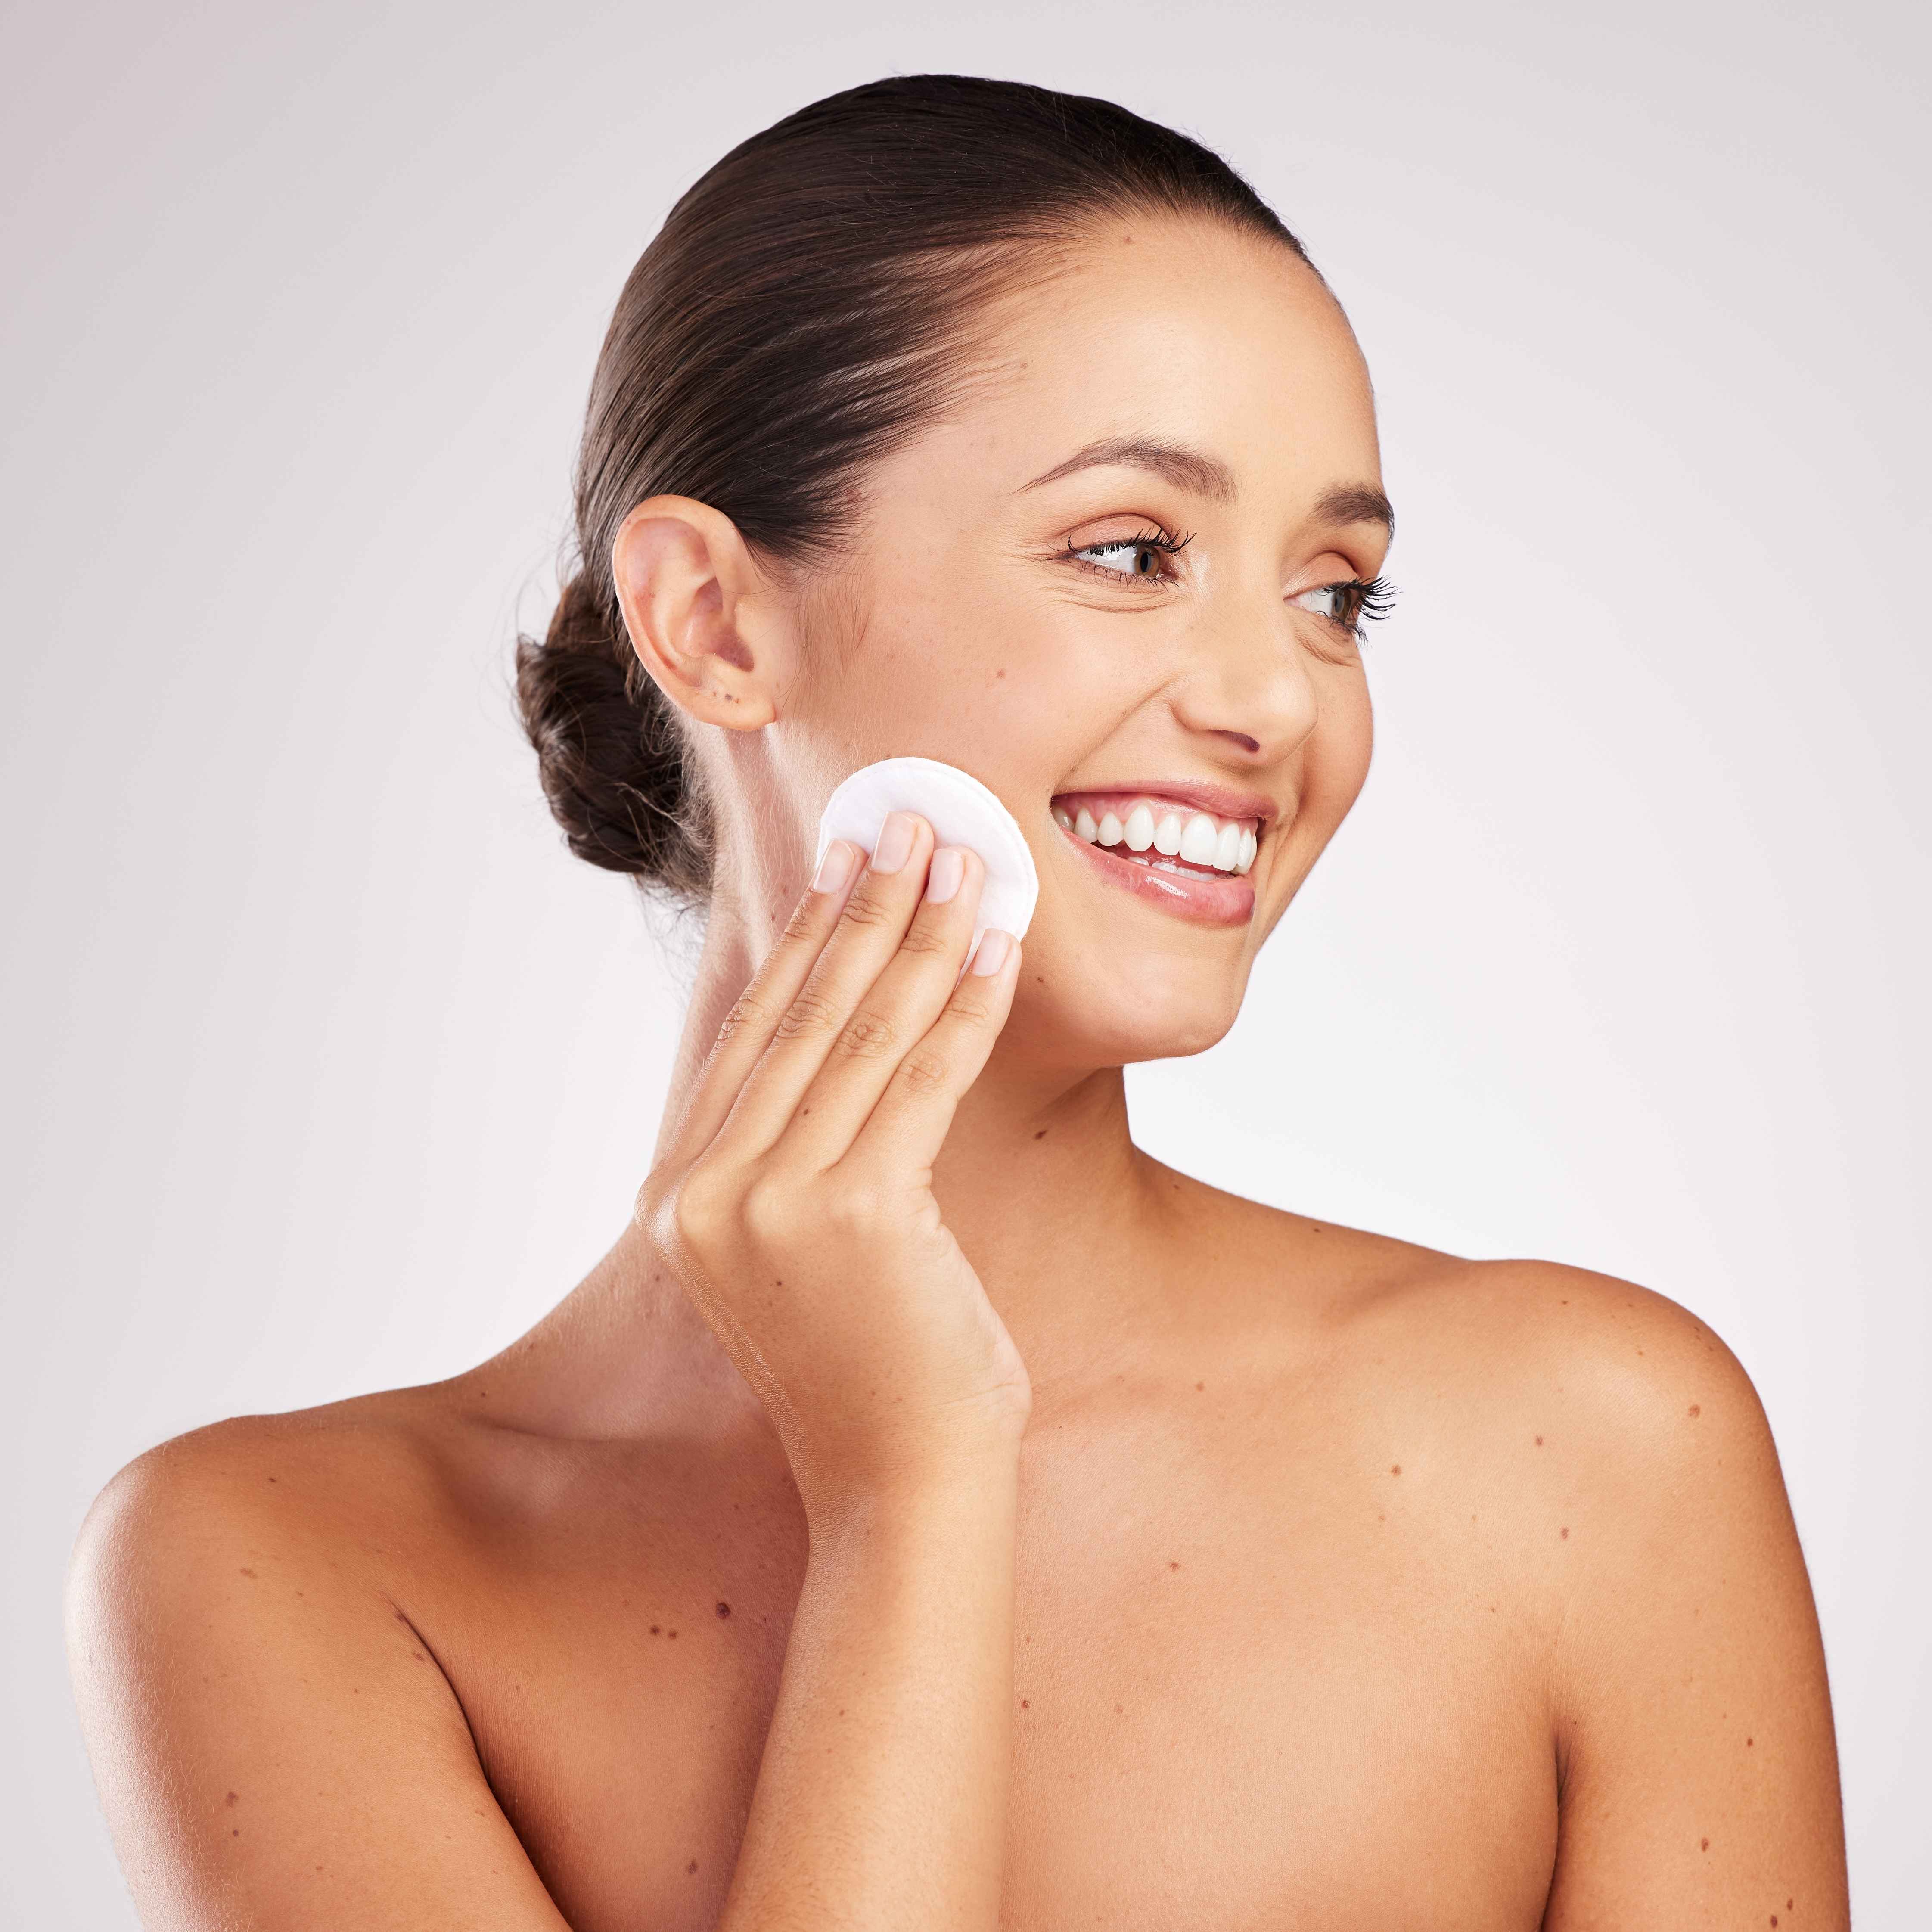 Clogged Pores 101: How to Unclog Your Pores 